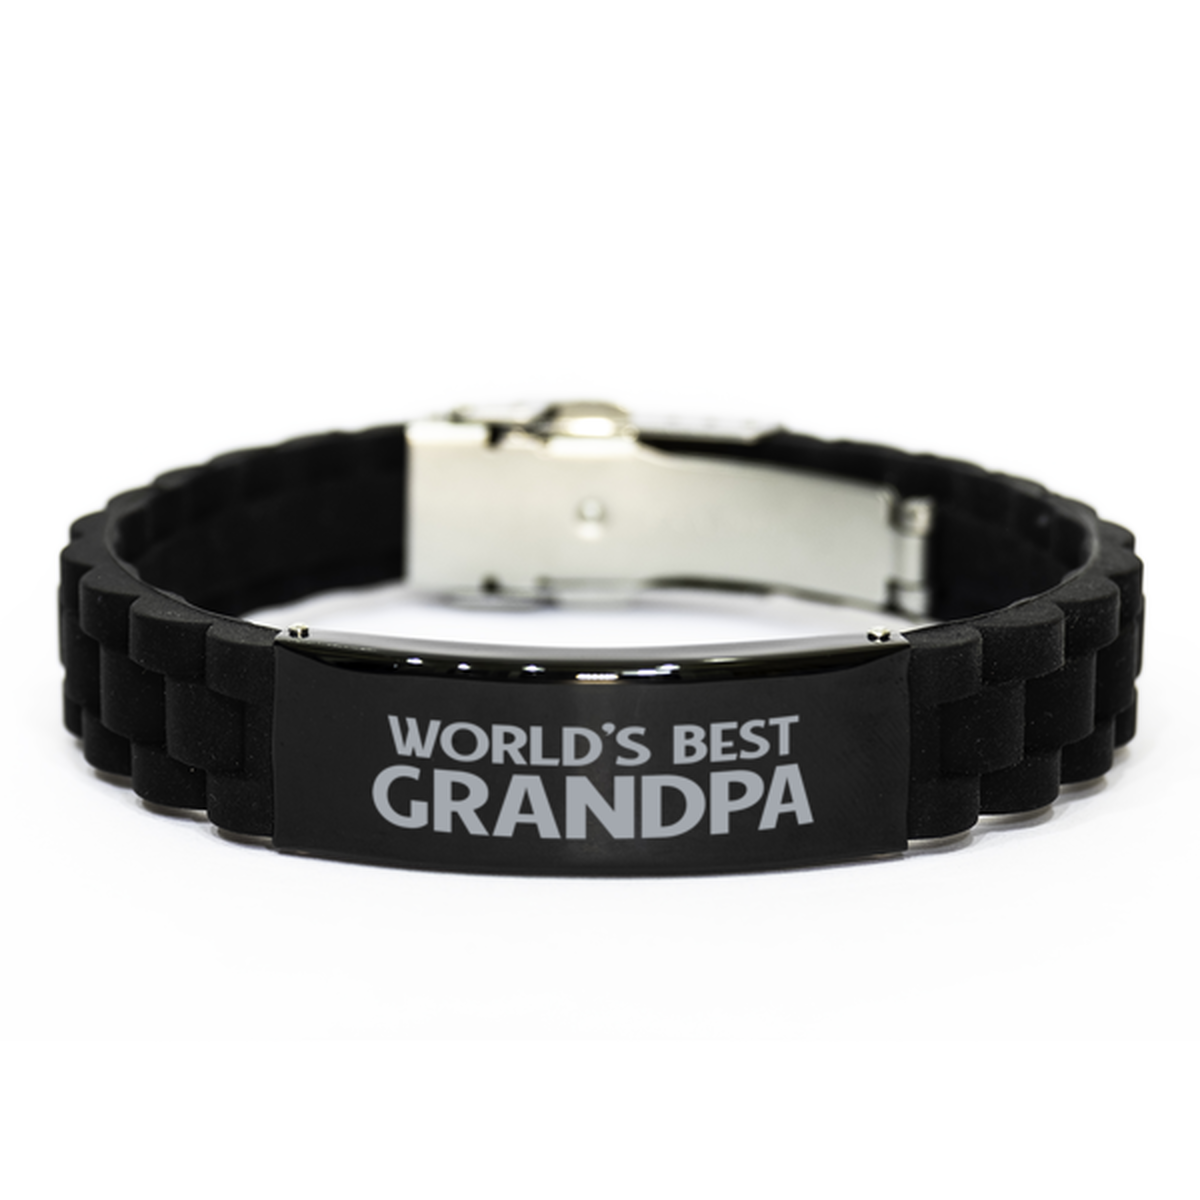 World's Best Grandpa Gifts, Funny Black Engraved Bracelet For Grandpa, Family Gifts For Men